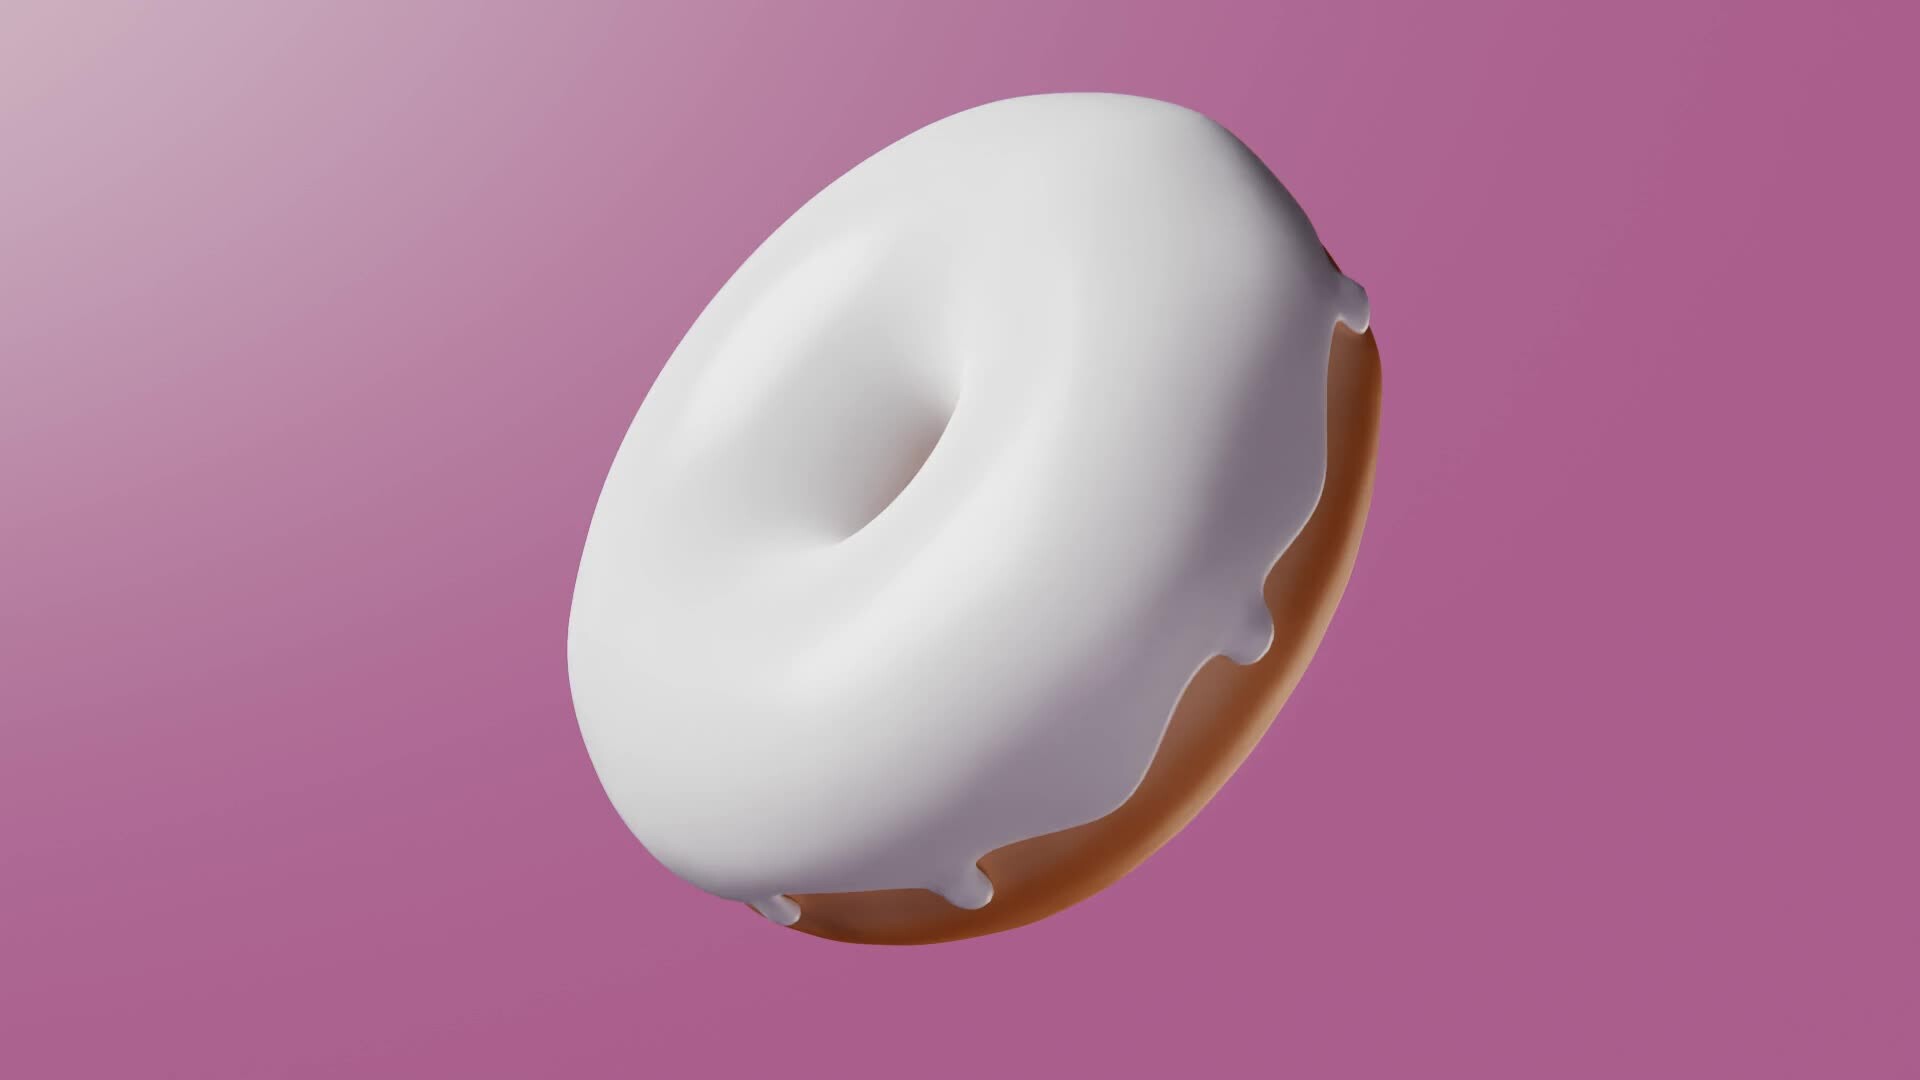 blender 3d donut